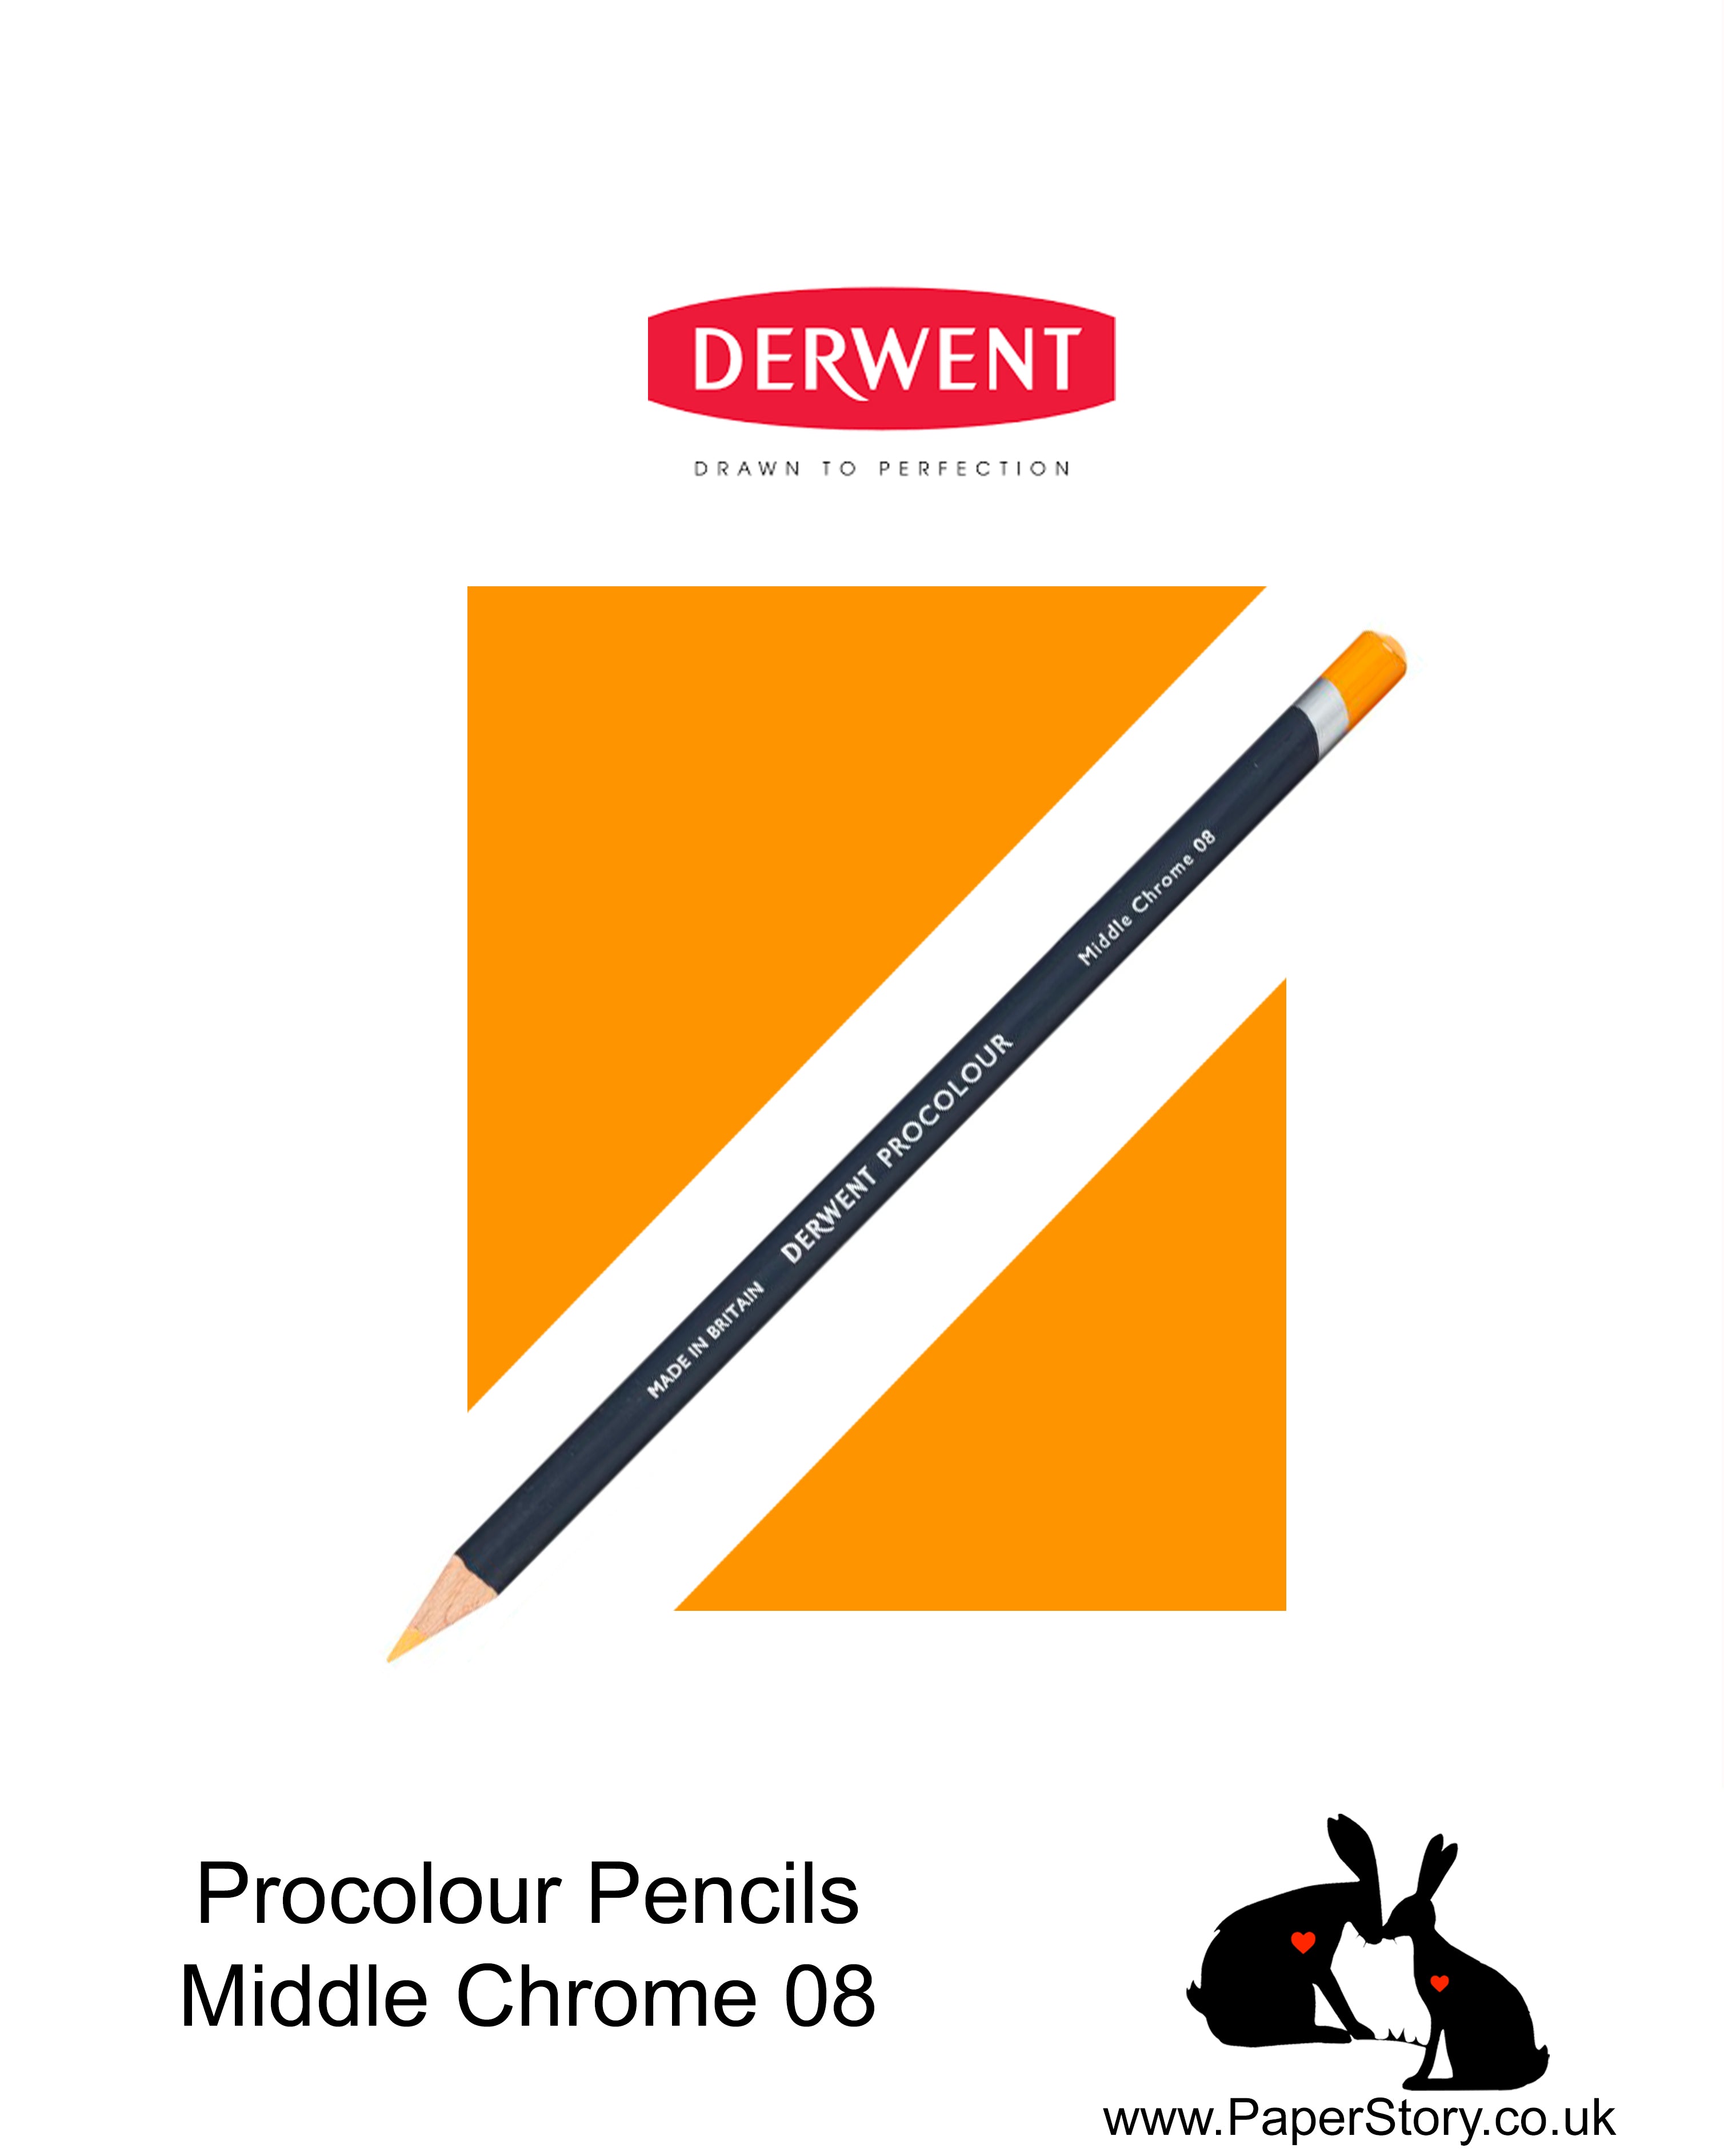 Derwent Procolour pencil Middle Chrome 08